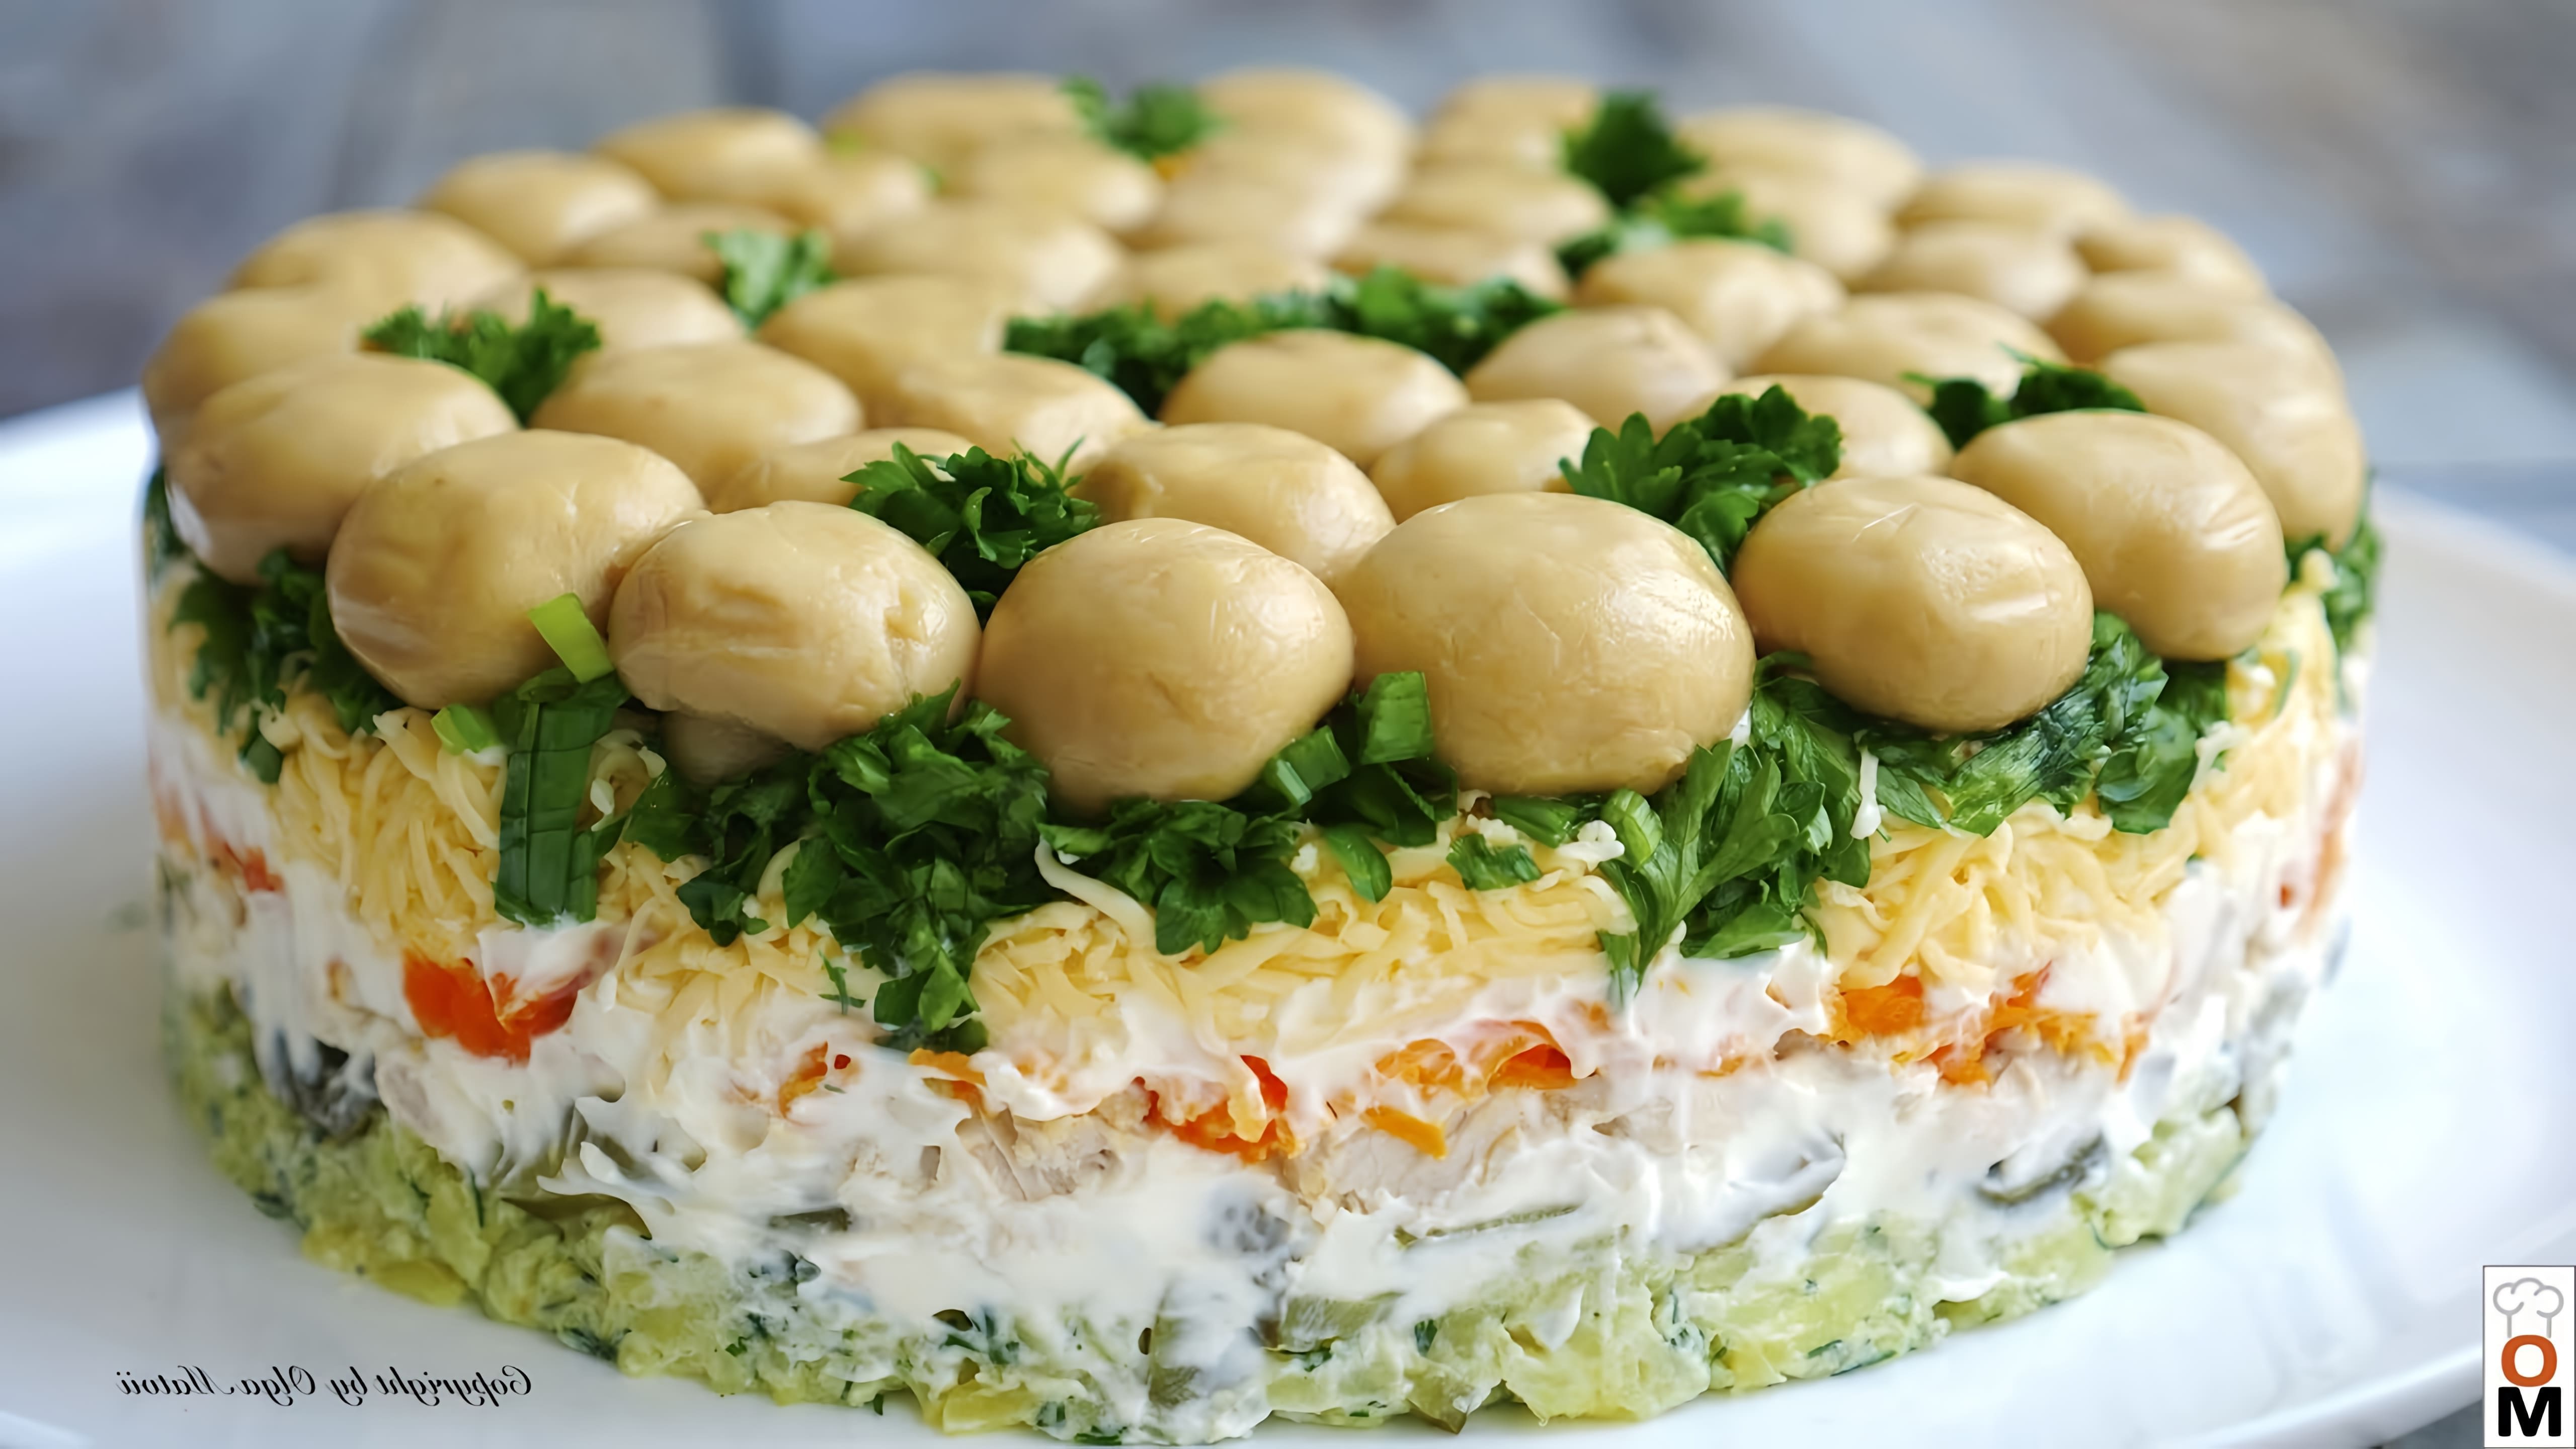 Салат называется "Грибная поляна" и является популярным блюдом, сравнимым по популярности с салатом Оливье